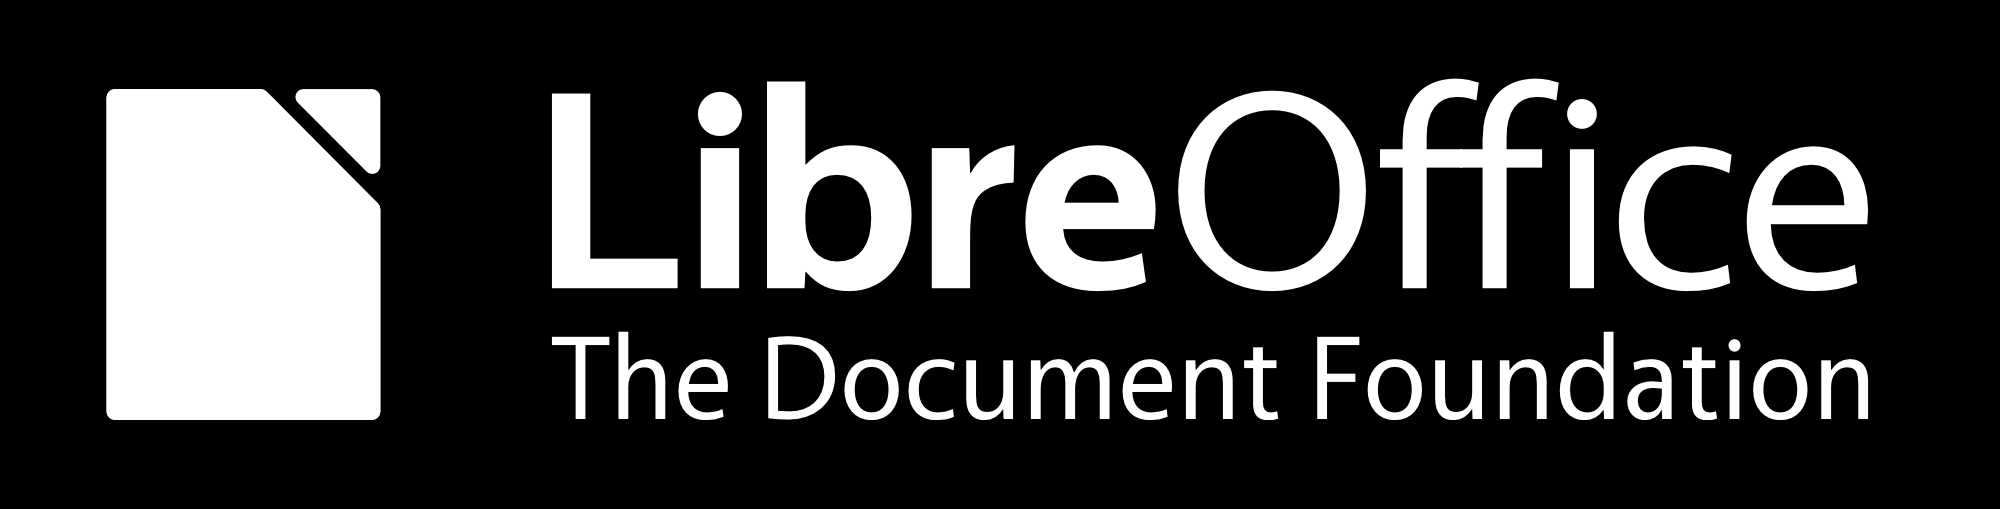 Handleiding voor Calc Hoofdstuk 11 Delen en nakijken van documenten Documentatie voor LibreOffice is